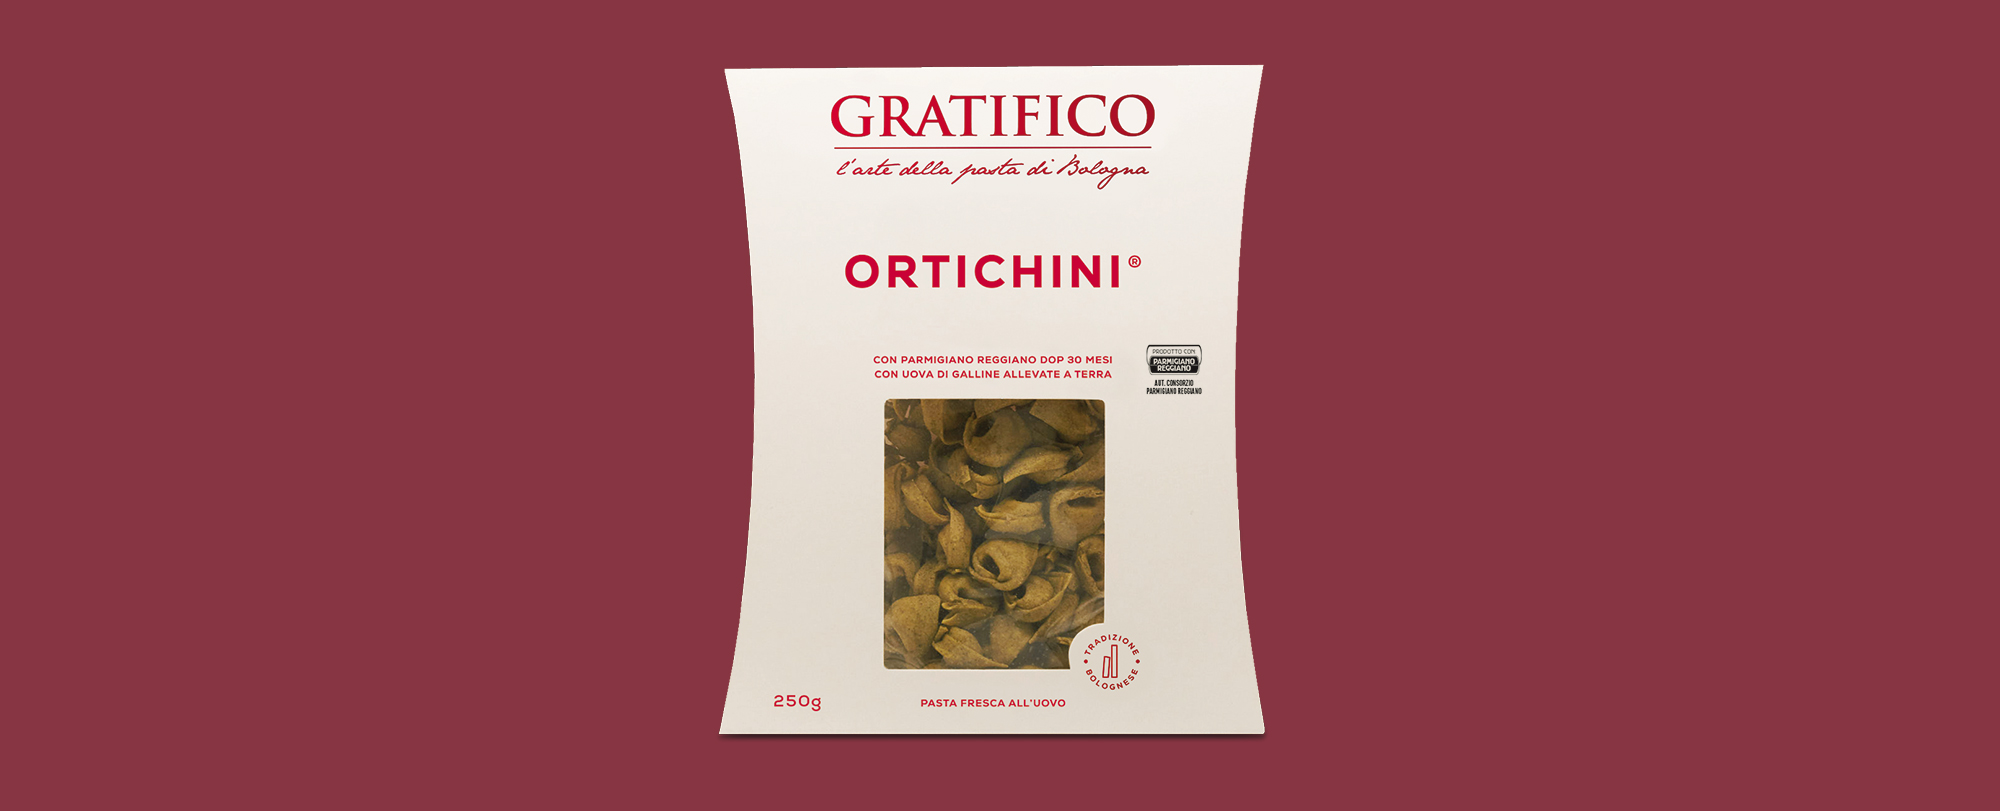 ortichini-pack-mockup